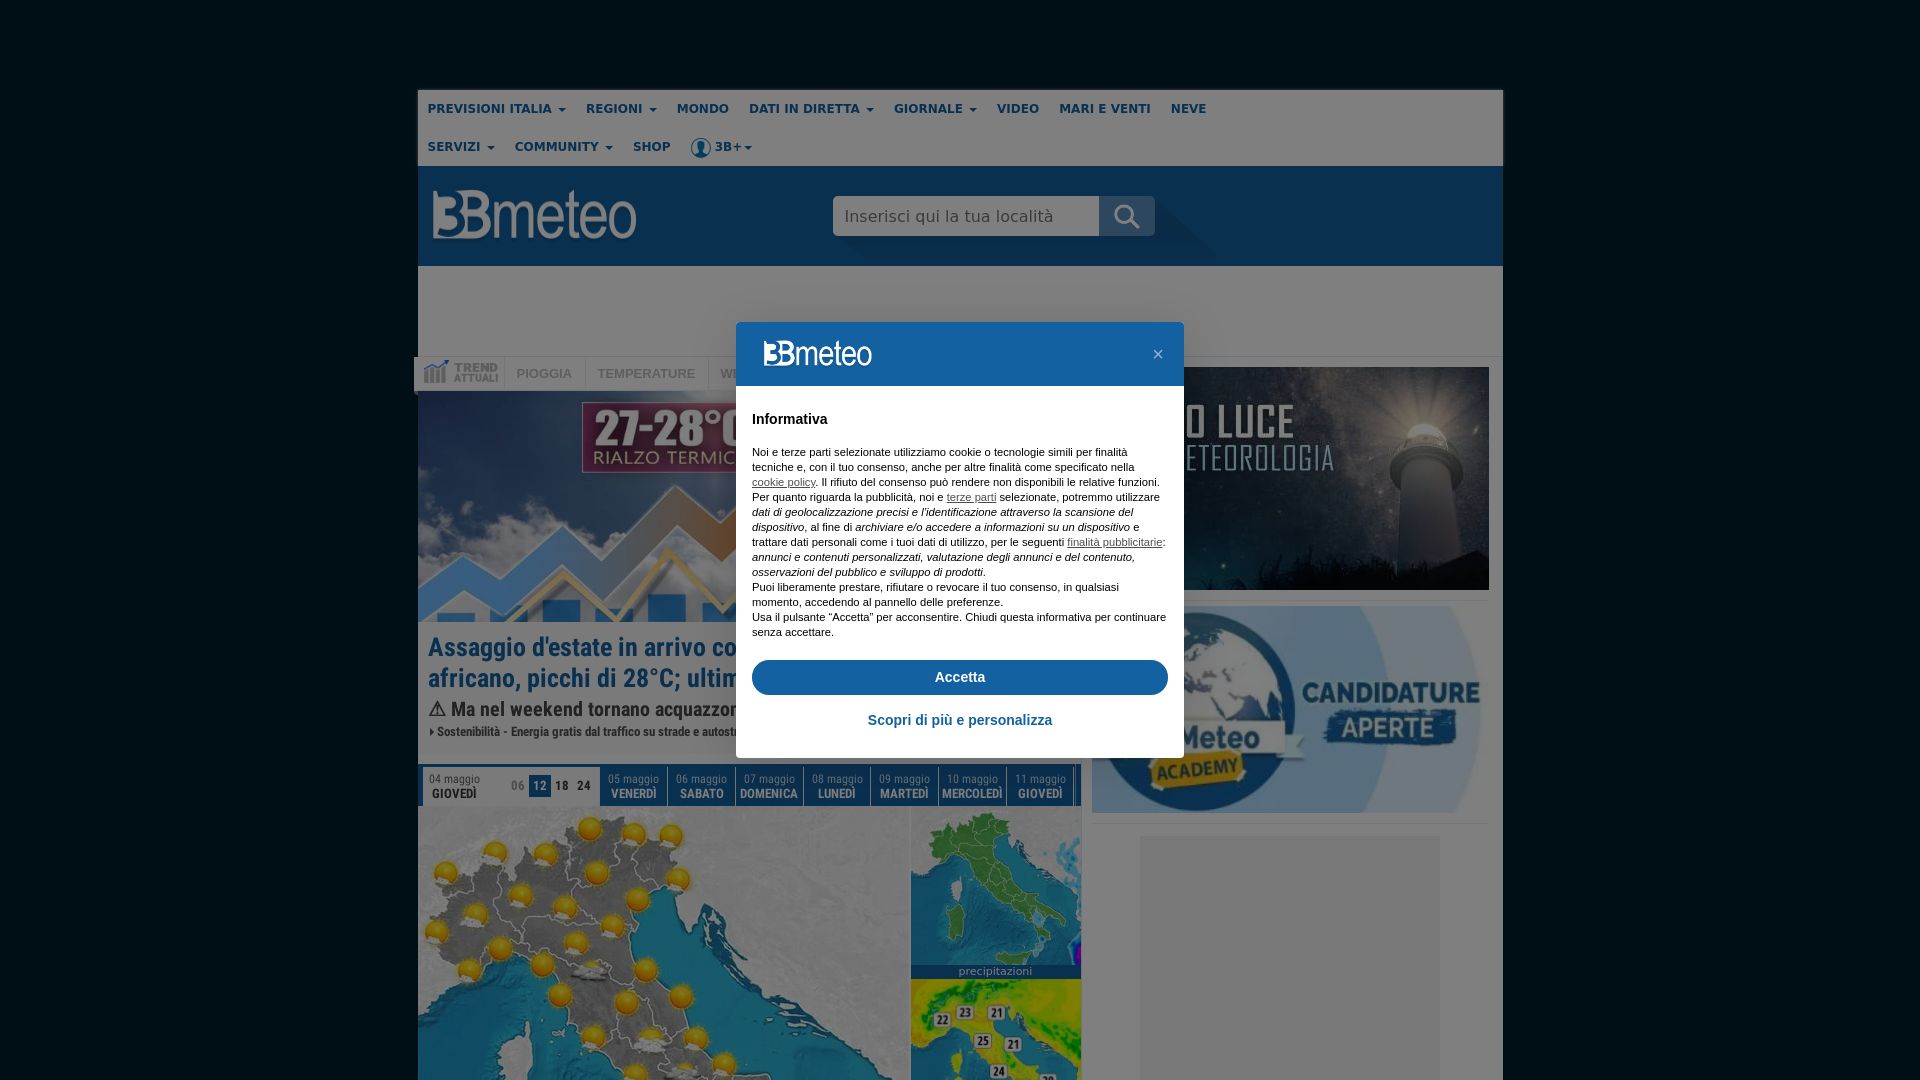 Status do site 3bmeteo.com está   ONLINE